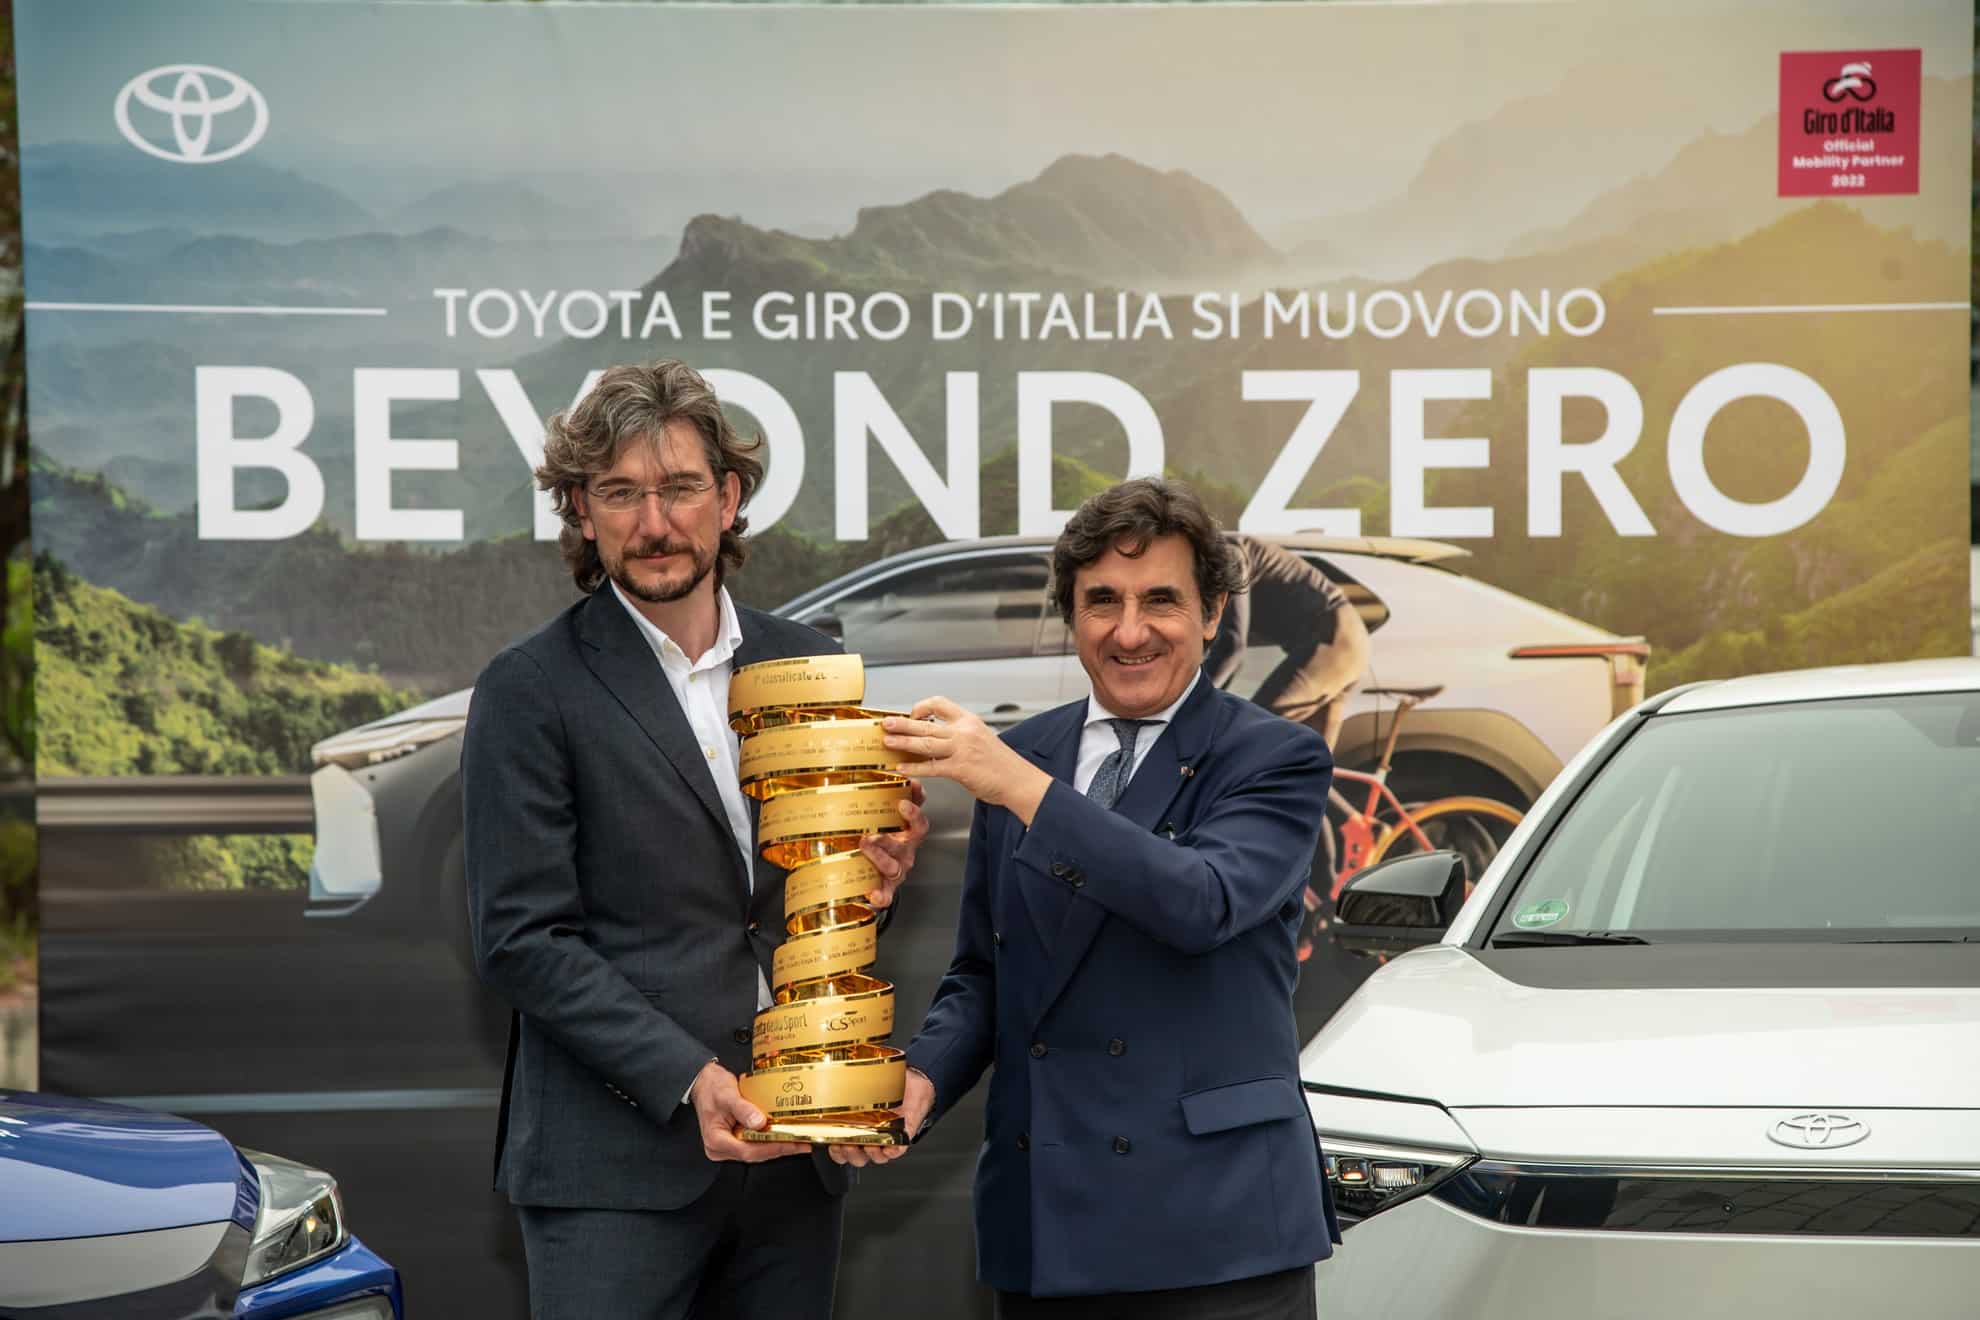 Al Giro d’Italia 2022 debutto italiano per Toyota bZ4X, la prima elettrica del Marchio